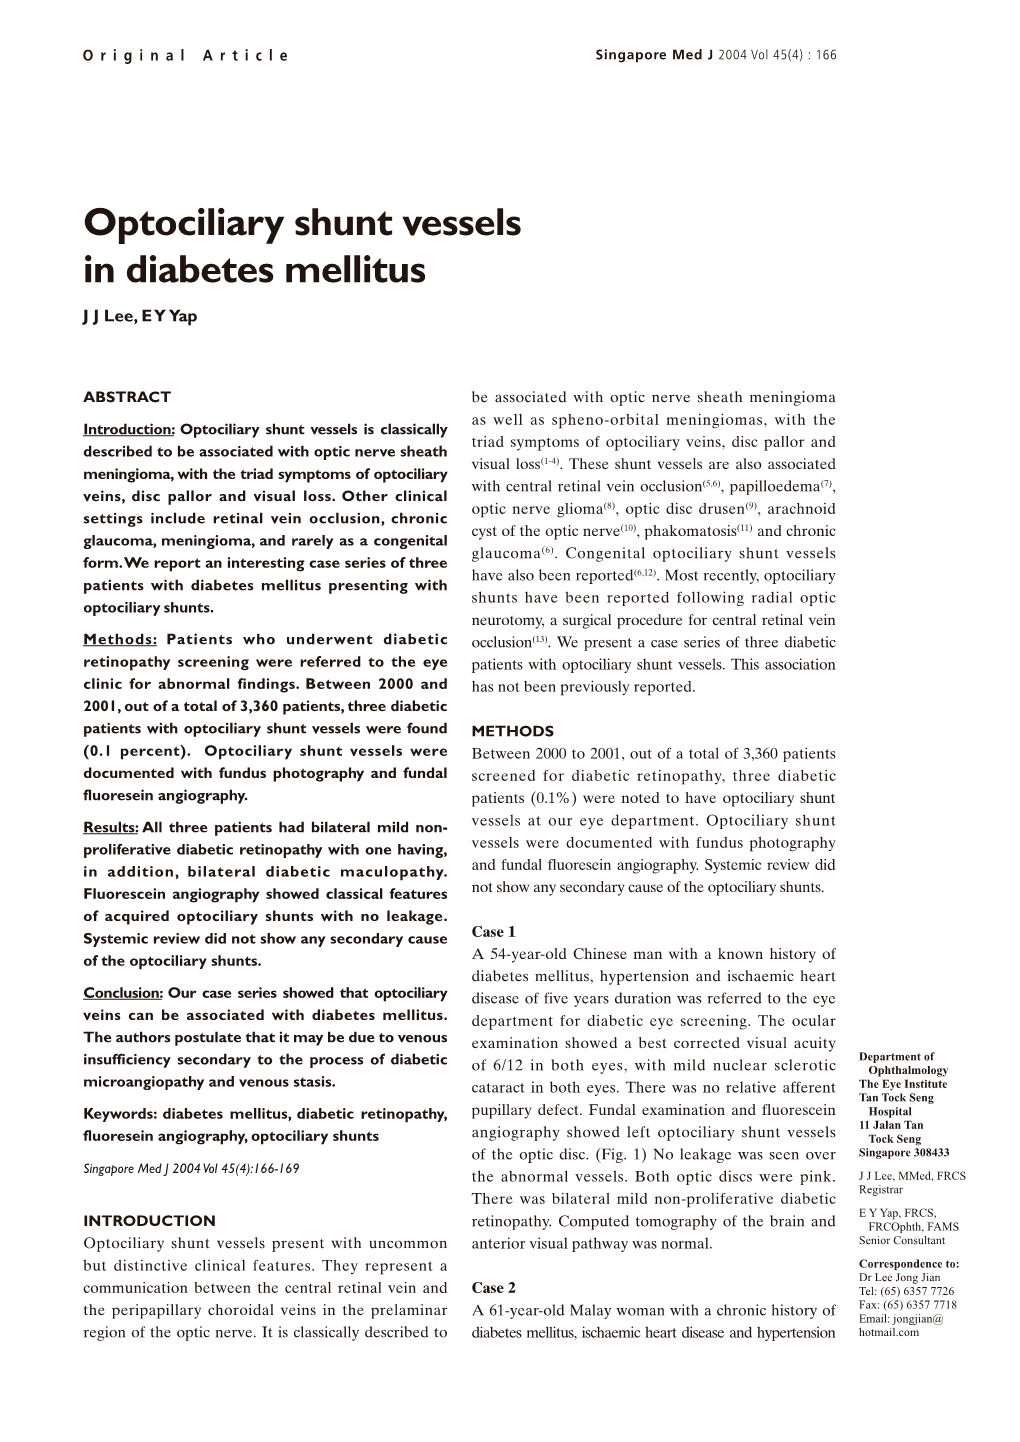 Optociliary Shunt Vessels in Diabetes Mellitus J J Lee, E Y Yap